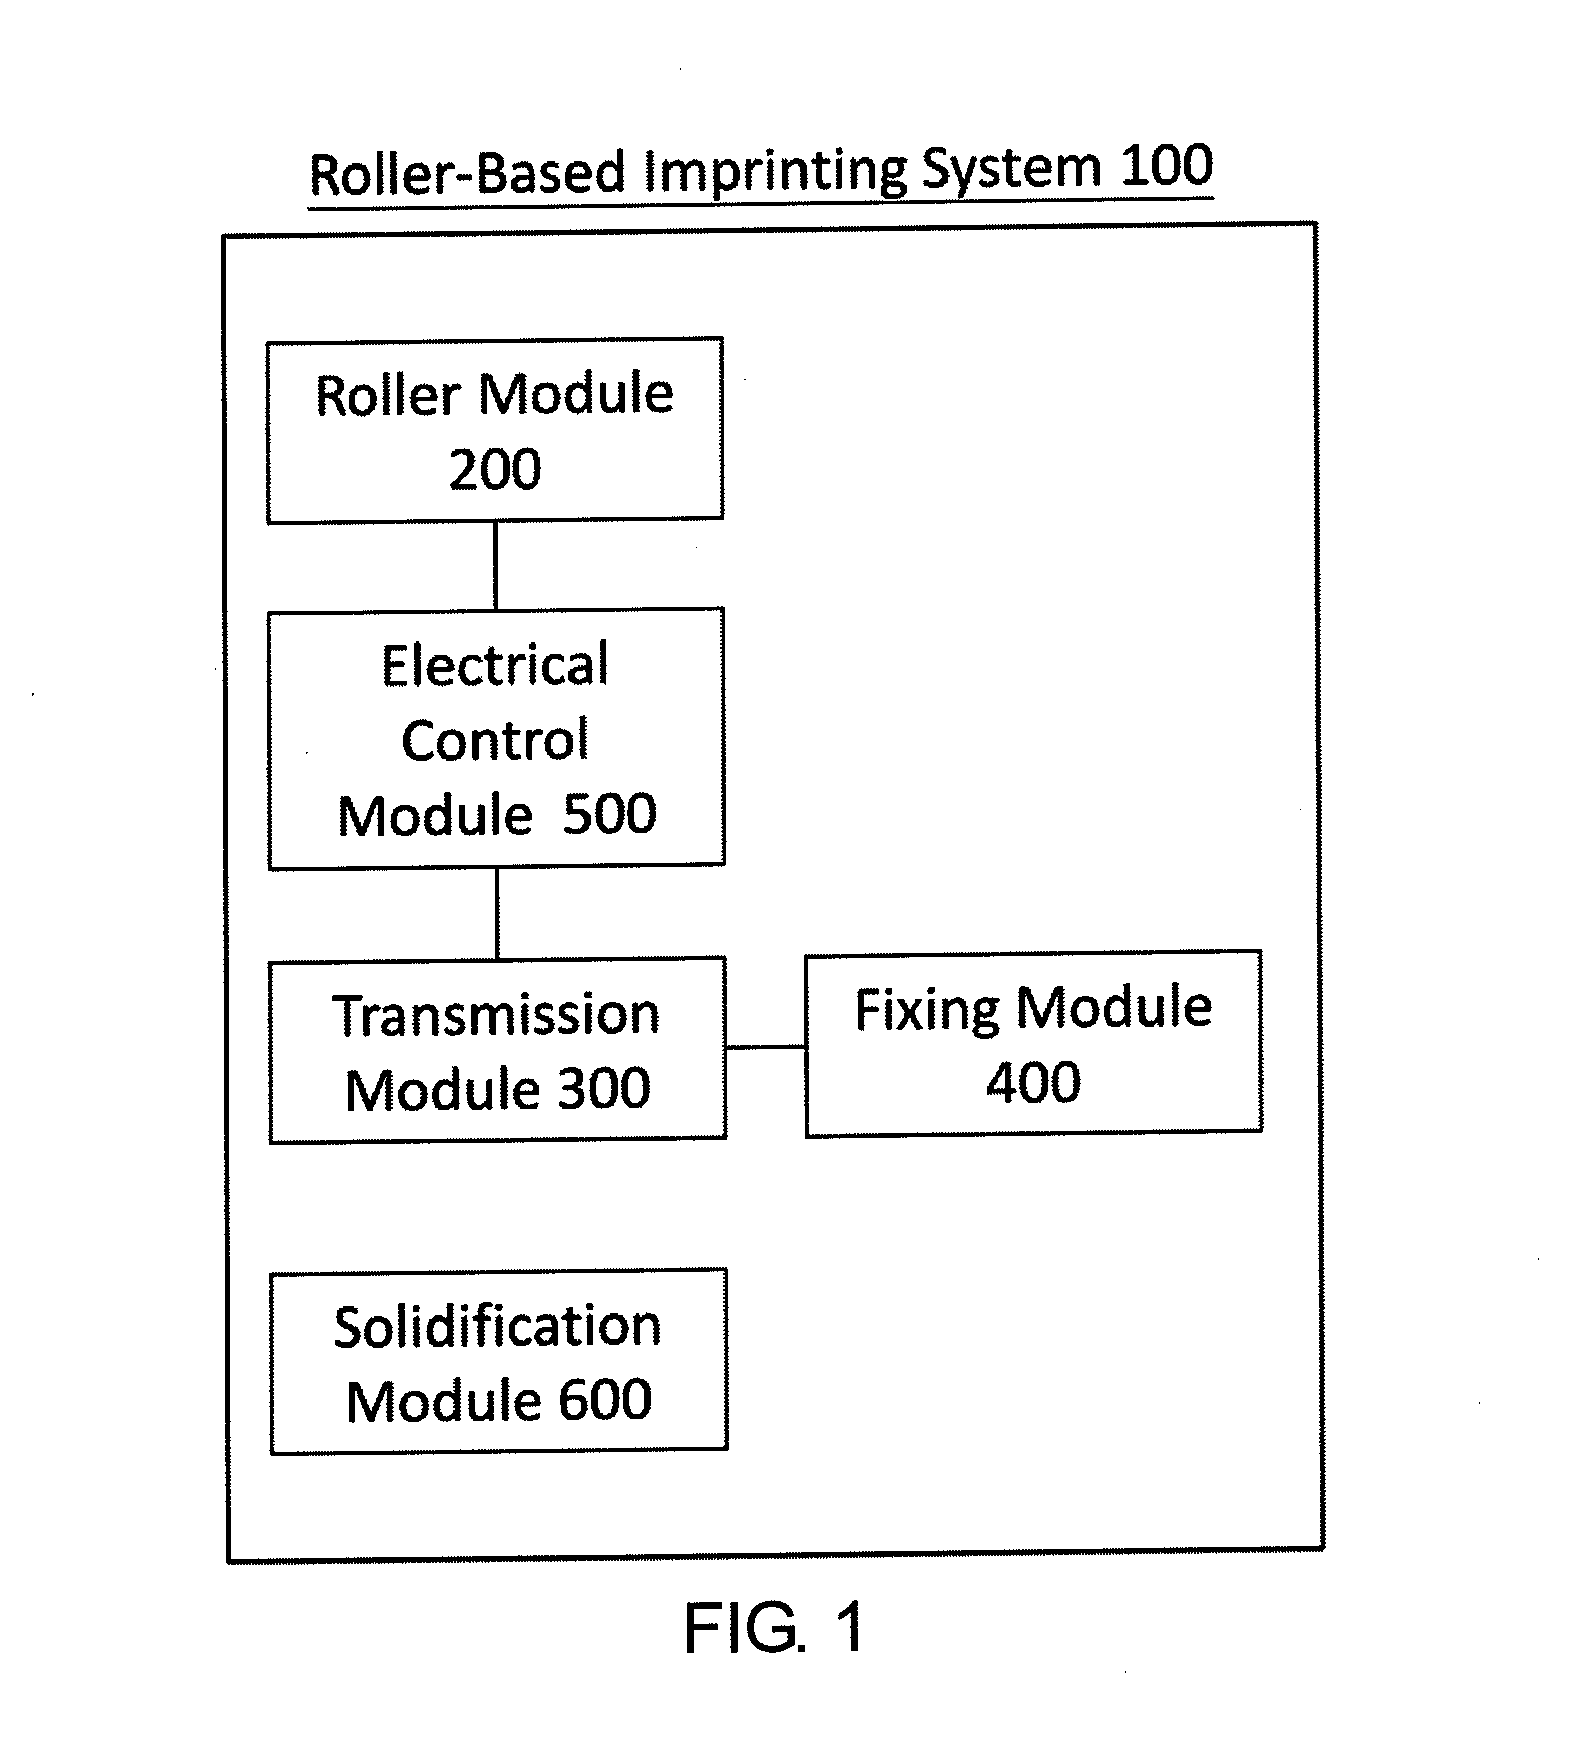 Roller-based imprinting system